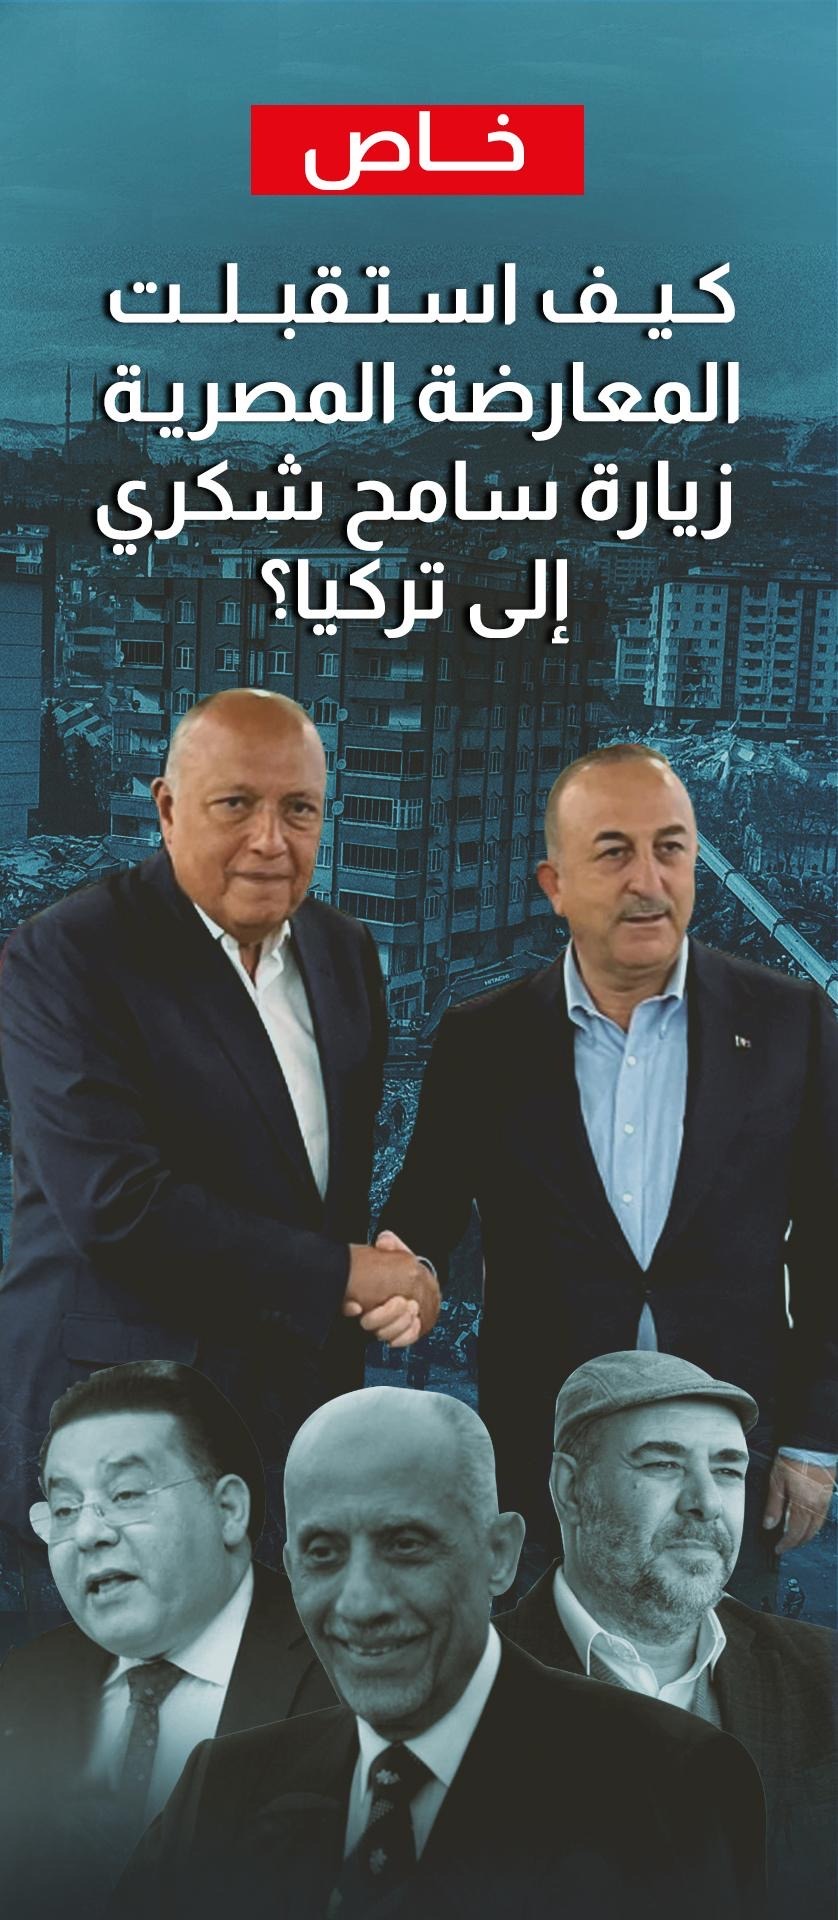 معارضون مصريون يتحدثون لـ"الخليج الجديد": كيف رأوا زيارة سامح شكري إلى تركيا؟